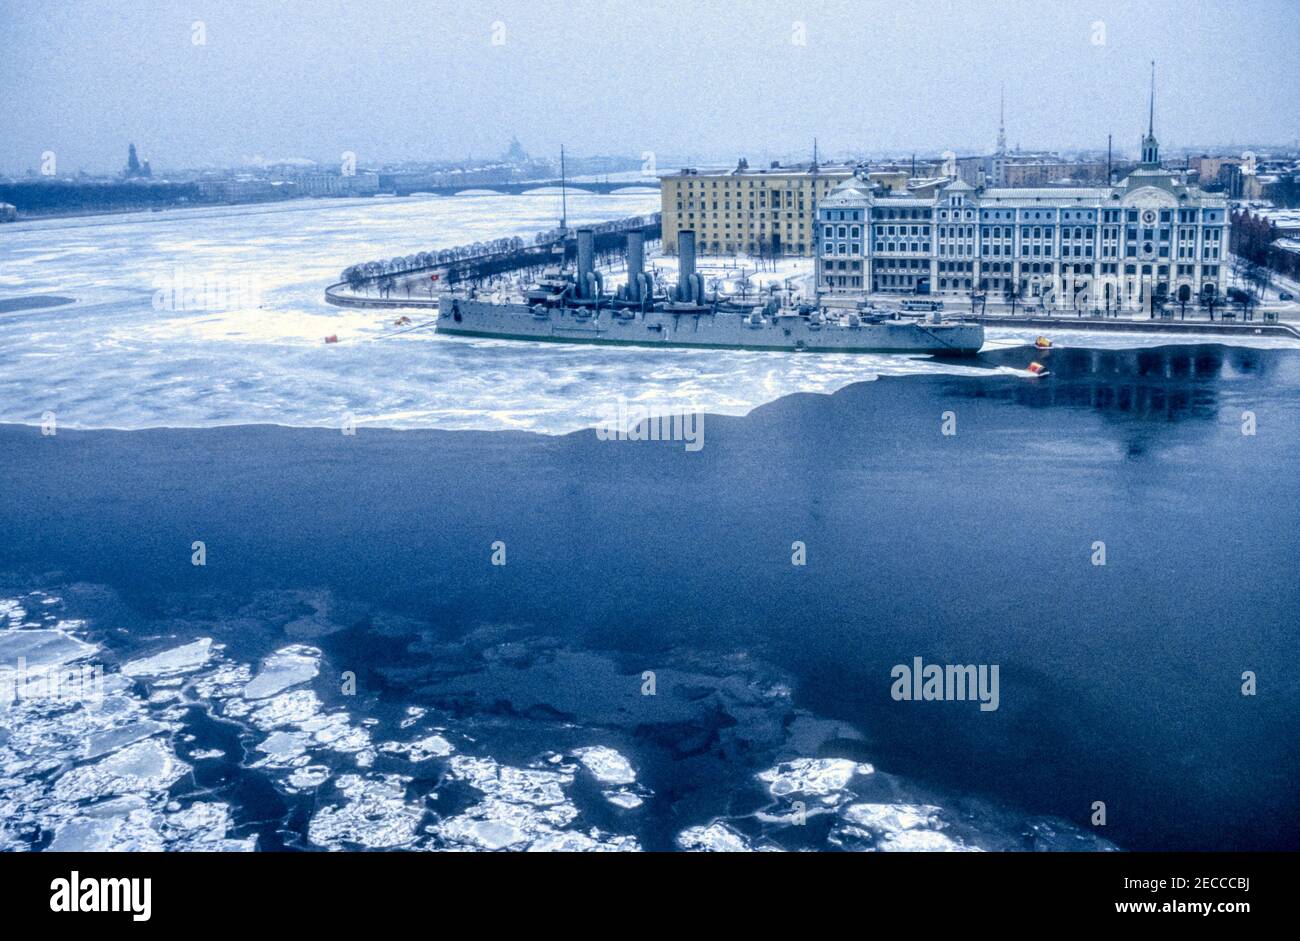 1990 Archivfoto des Cruiser Aurora über den gefrorenen Fluss Bolshaya Nevka und den Fluss Neva in Leningrad, jetzt St. Petersburg, Russland. Stockfoto